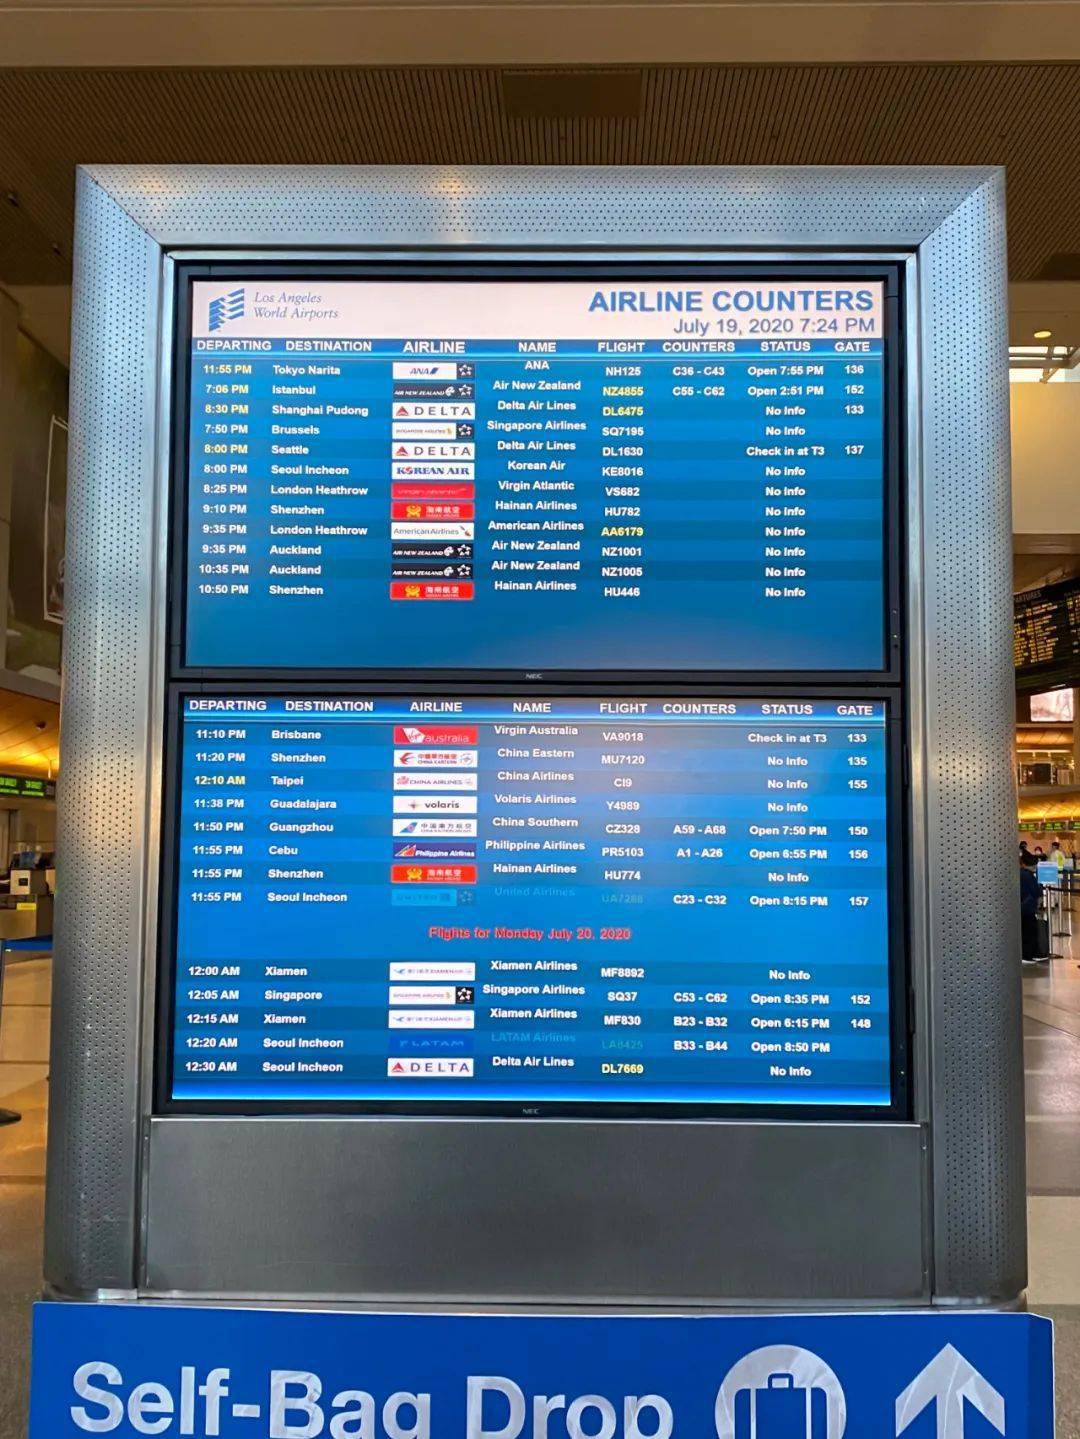 厦门航空的柜台号码一开始没有在机场屏幕上公布,但是看到b21-b32的